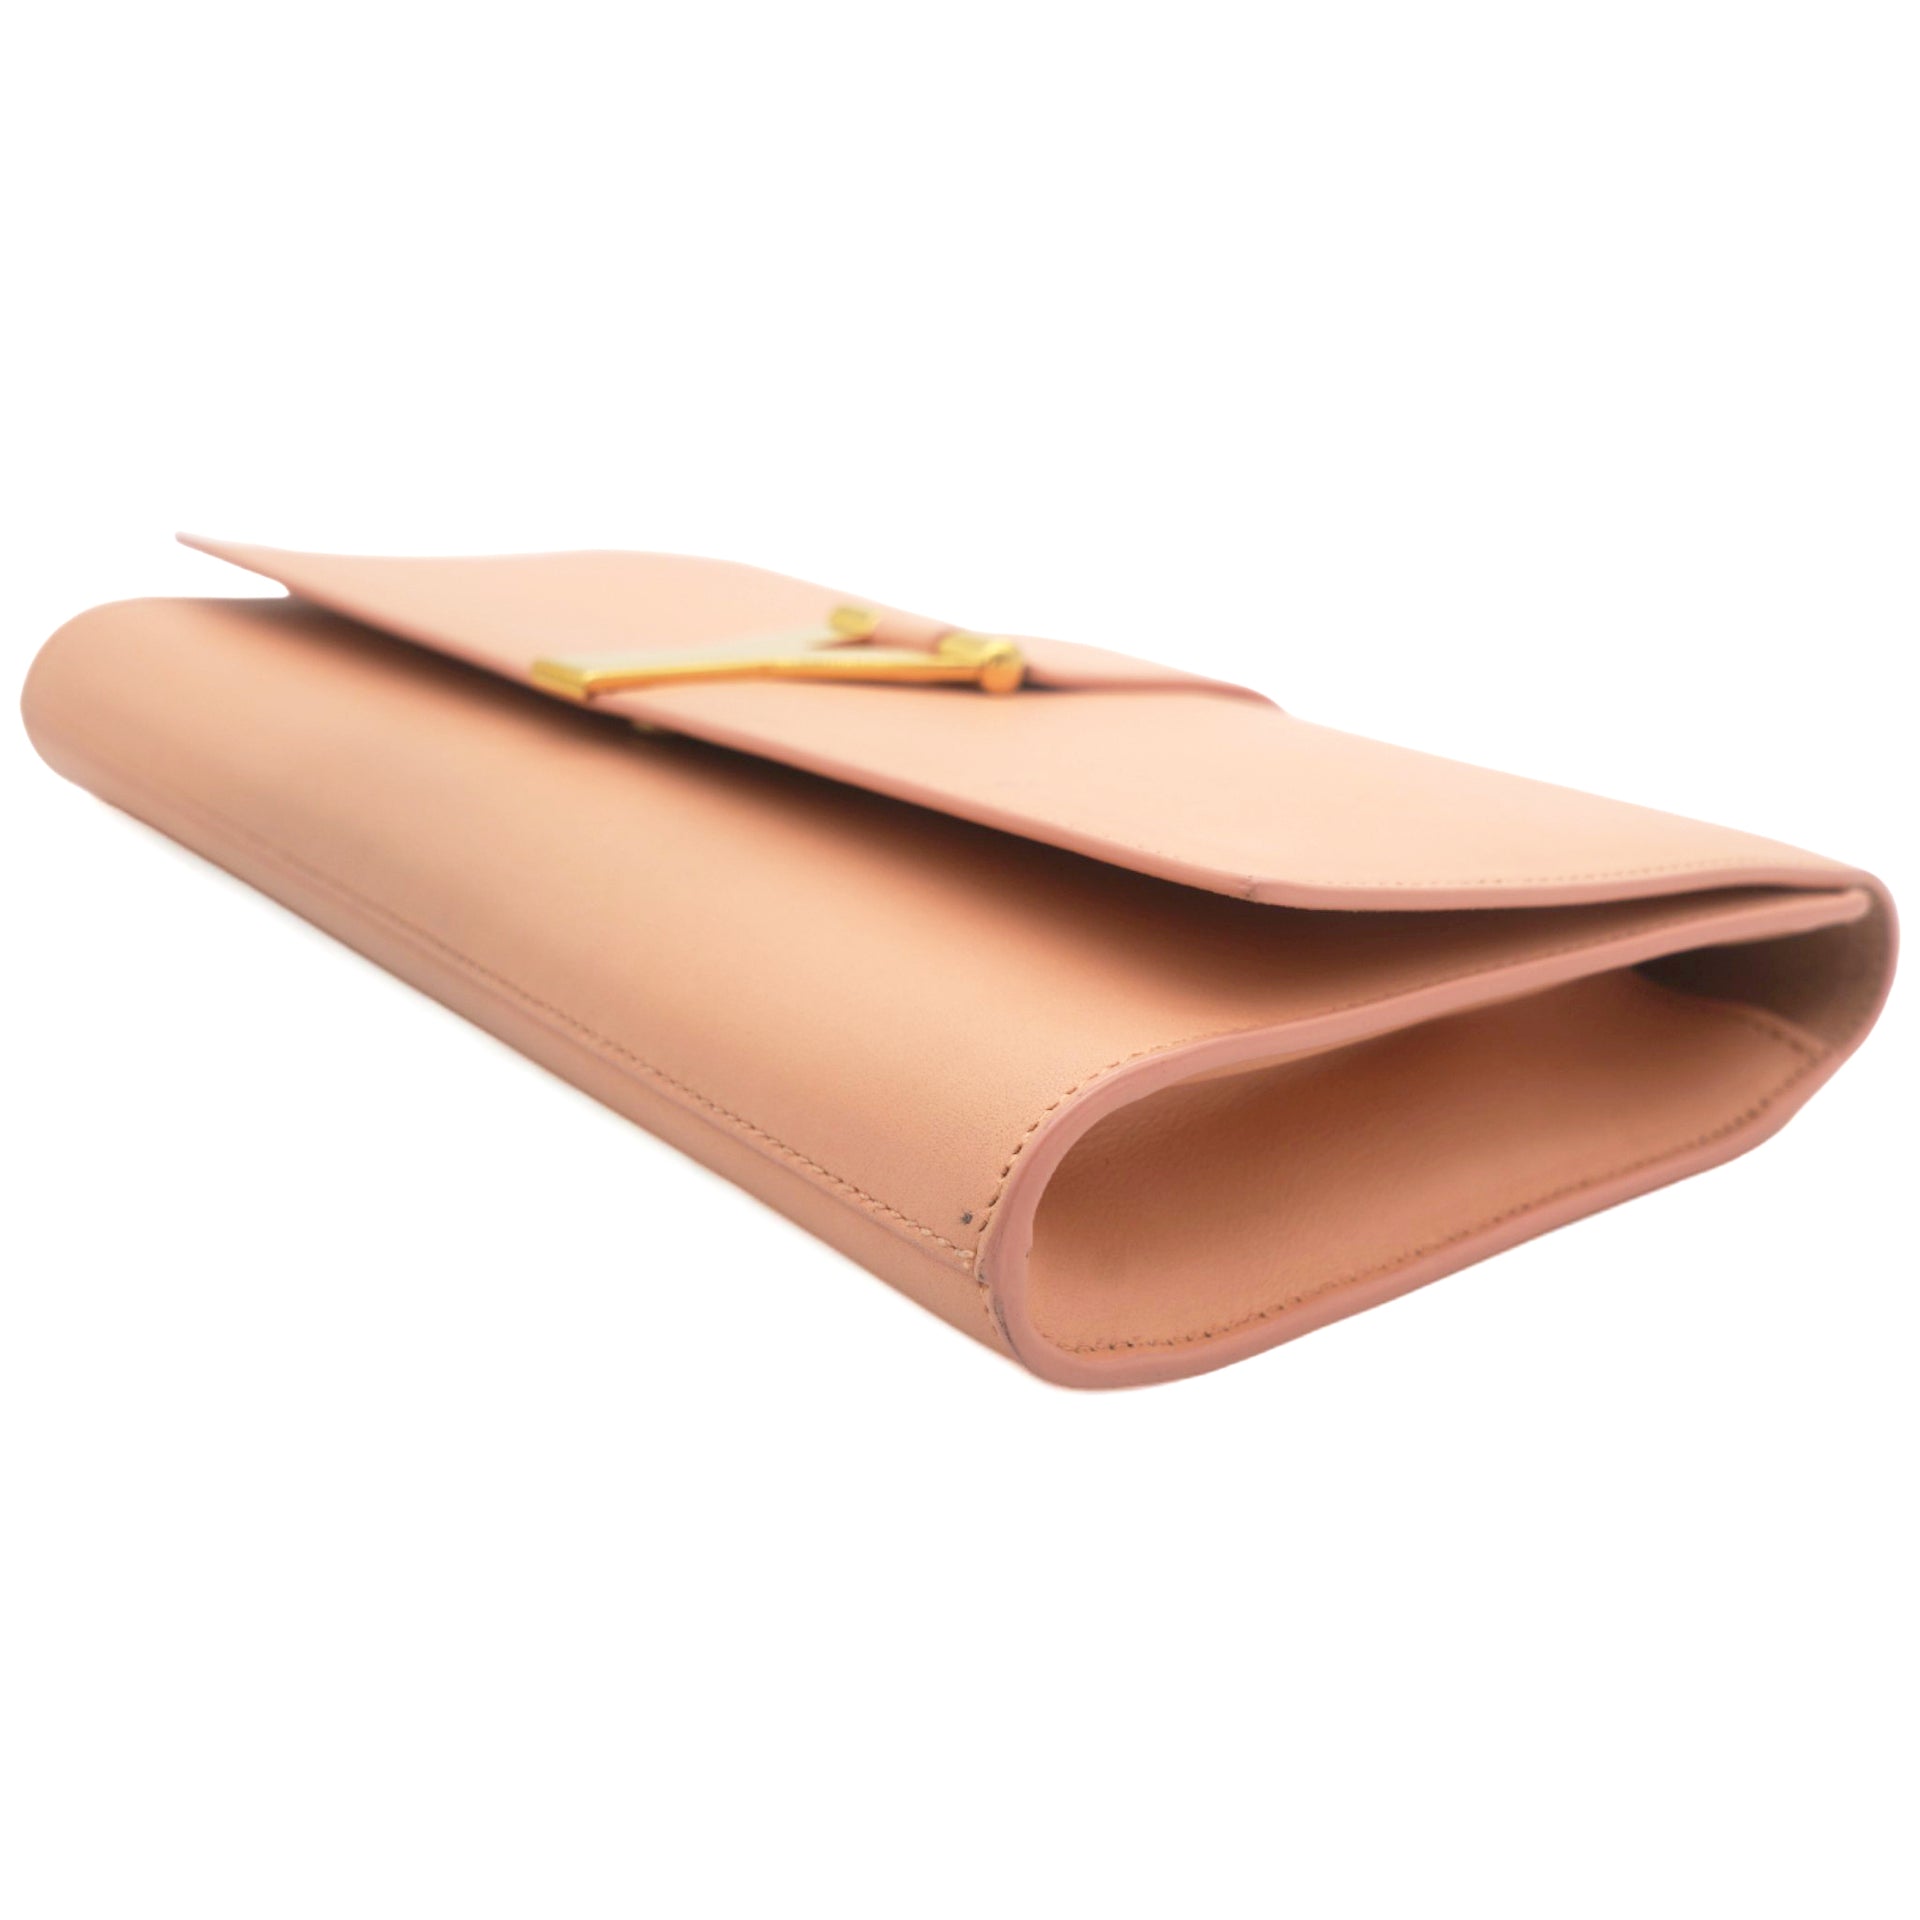 Light Pink Leather Ligne Y Clutch Bag